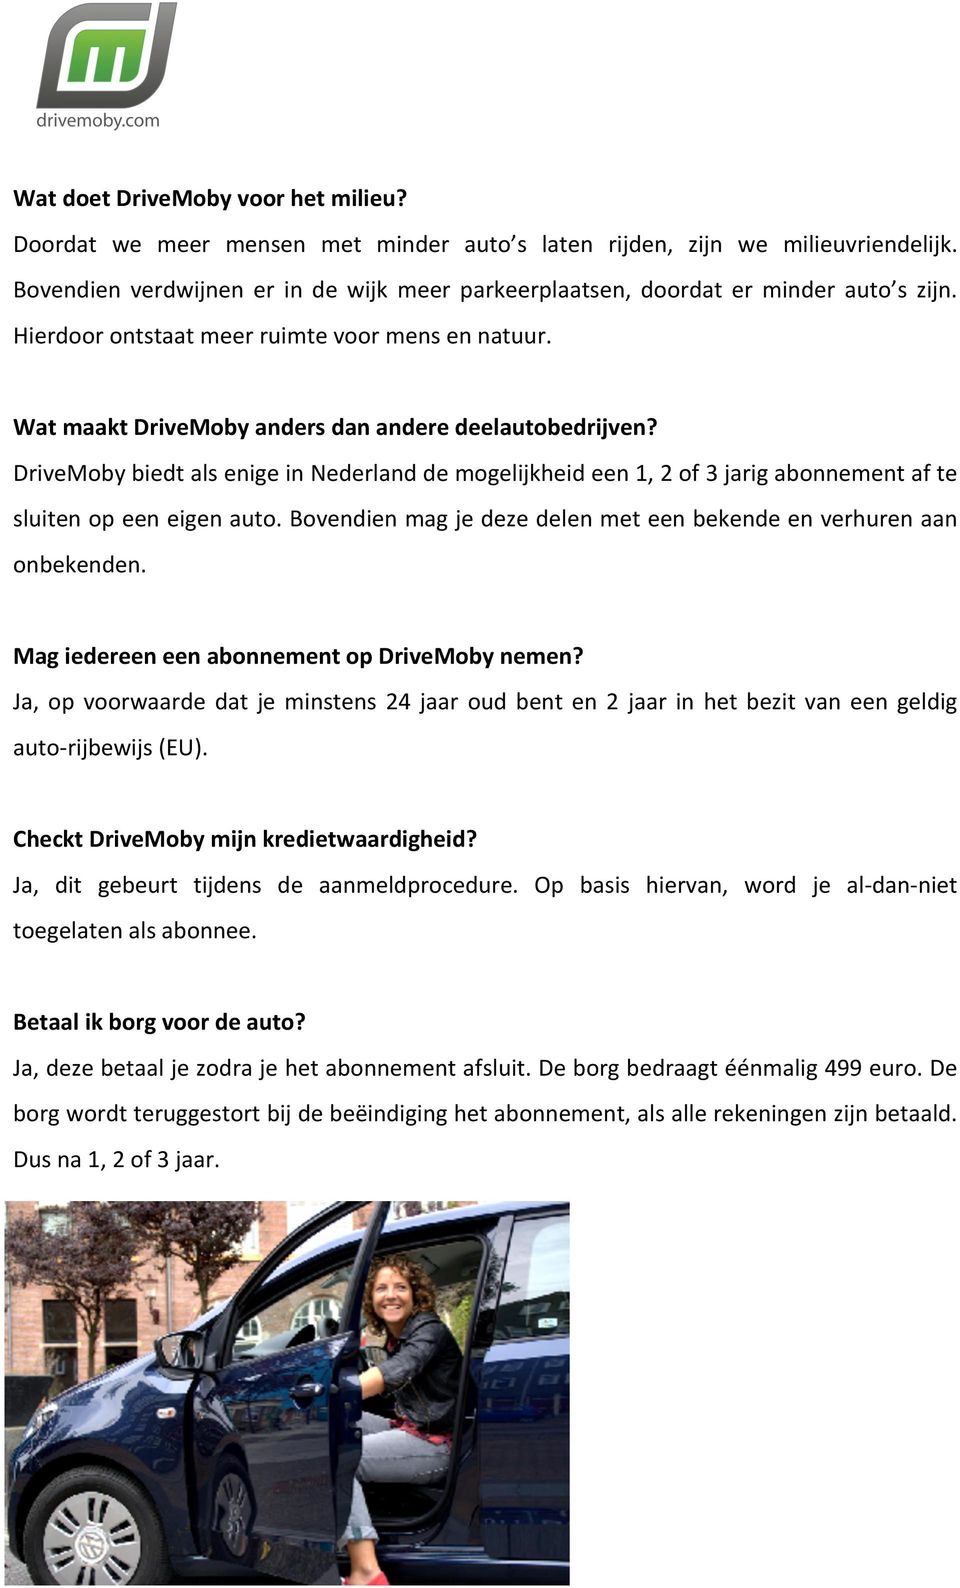 DriveMoby biedt als enige in Nederland de mogelijkheid een 1, 2 of 3 jarig abonnement af te sluiten op een eigen auto. Bovendien mag je deze delen met een bekende en verhuren aan onbekenden.